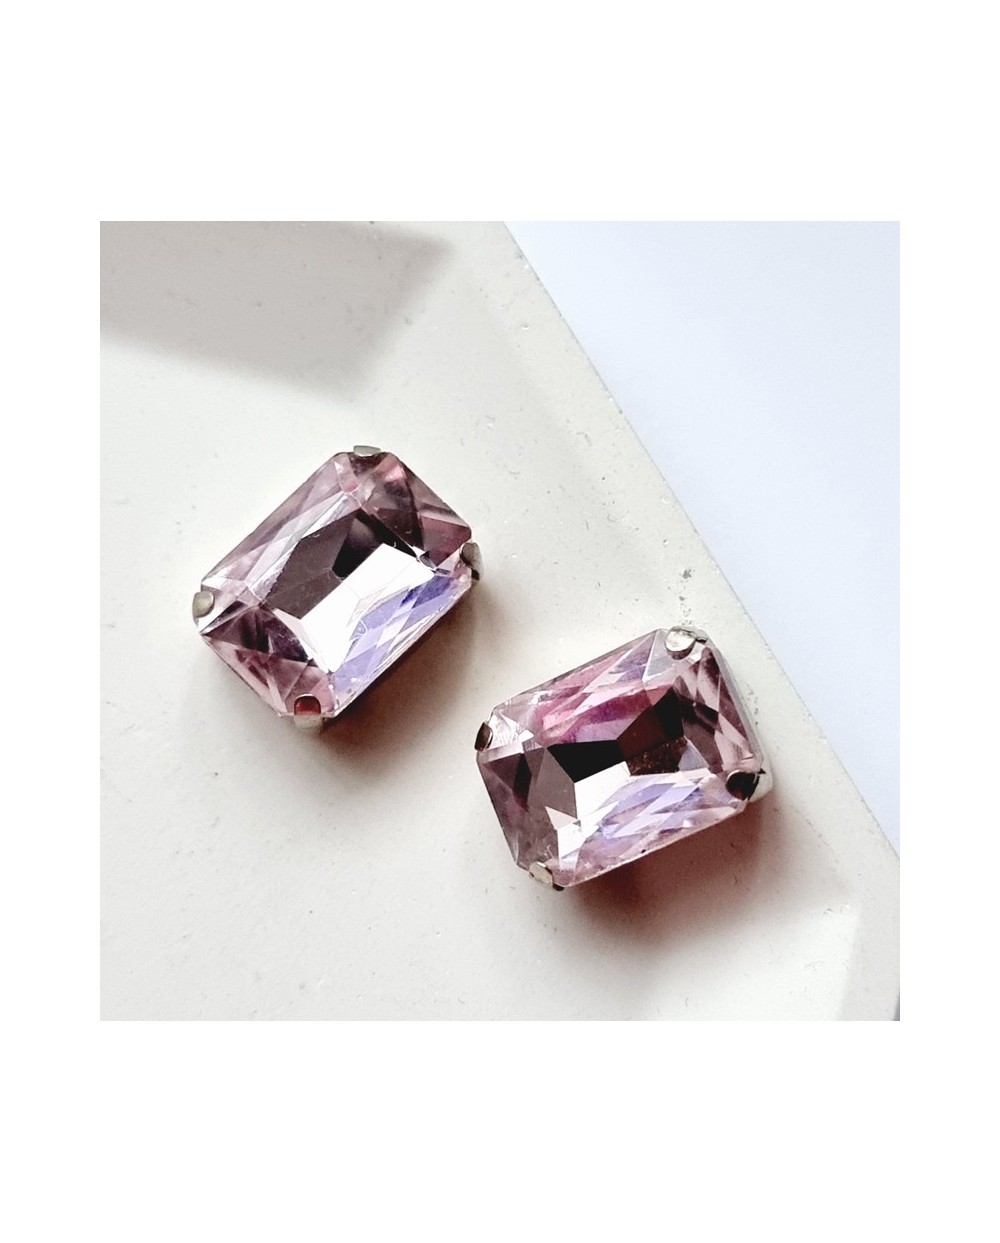 Stačiakampiai prisiuvami kristalai  violetinės sp., 12x10mm, 1 vnt.